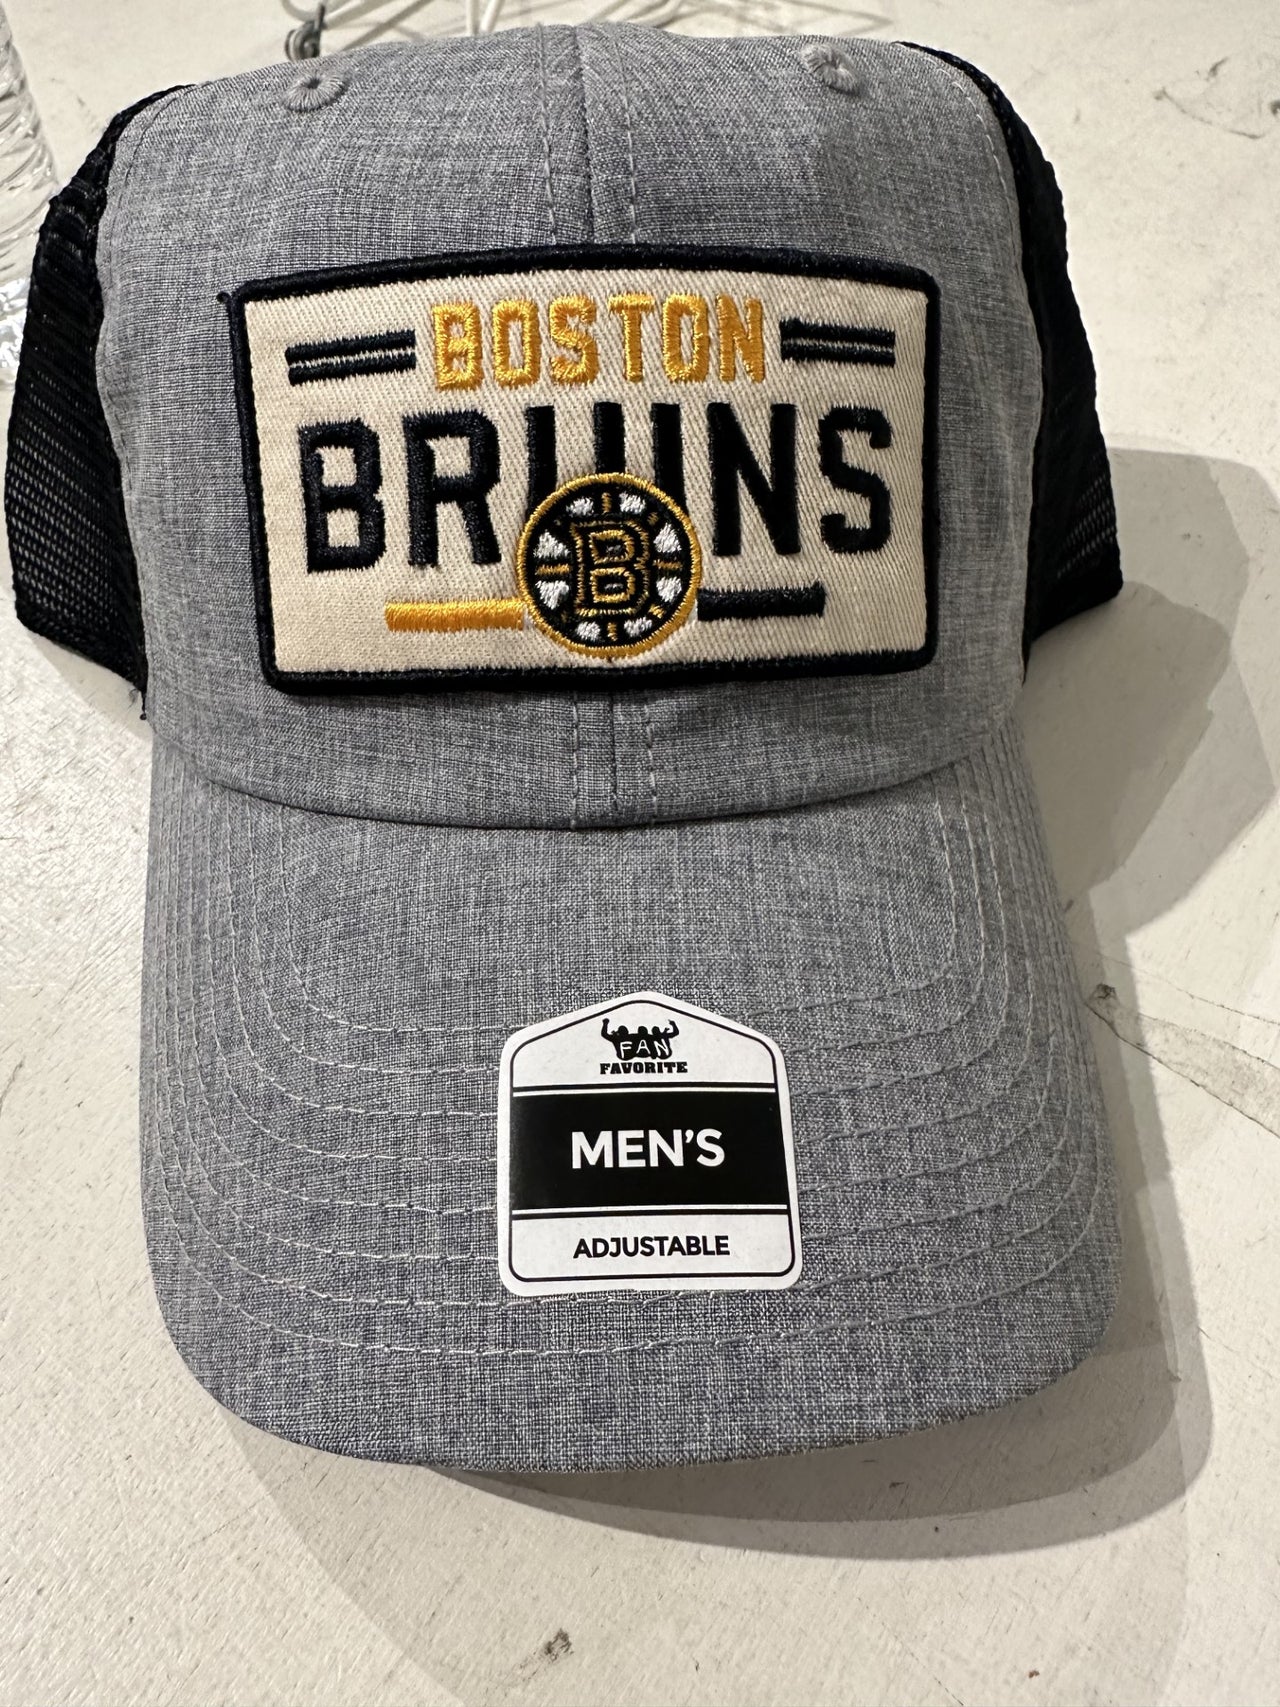 Boston Bruins Fan Favorite Trucker Hat - Gray/Black